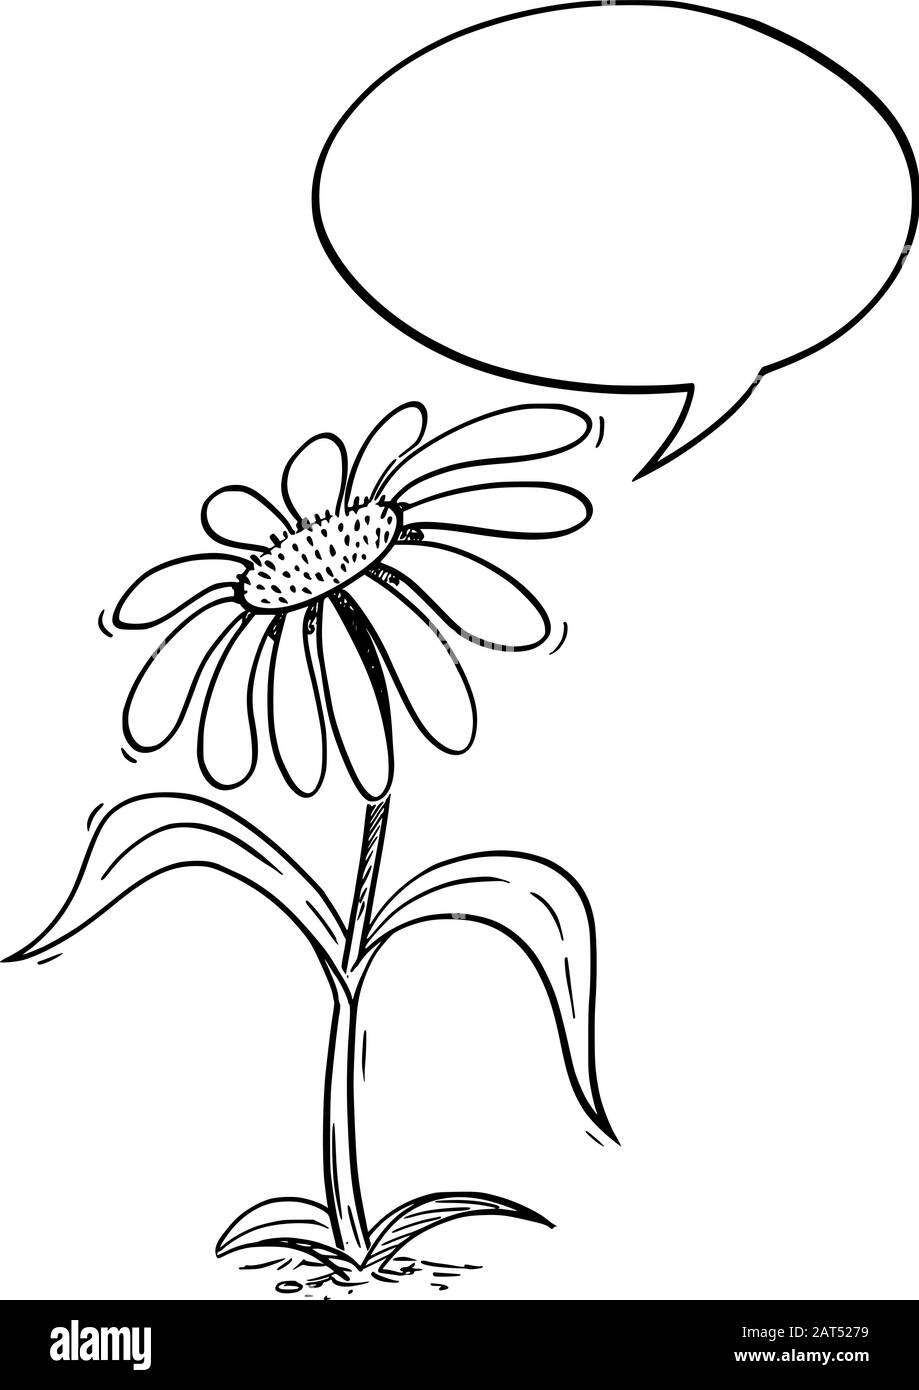 Illustration vectorielle du personnage de la Marguerite à fleurs de caricature avec bulle vocale. Publicité écologique ou de nature ou conception marketing. Illustration de Vecteur